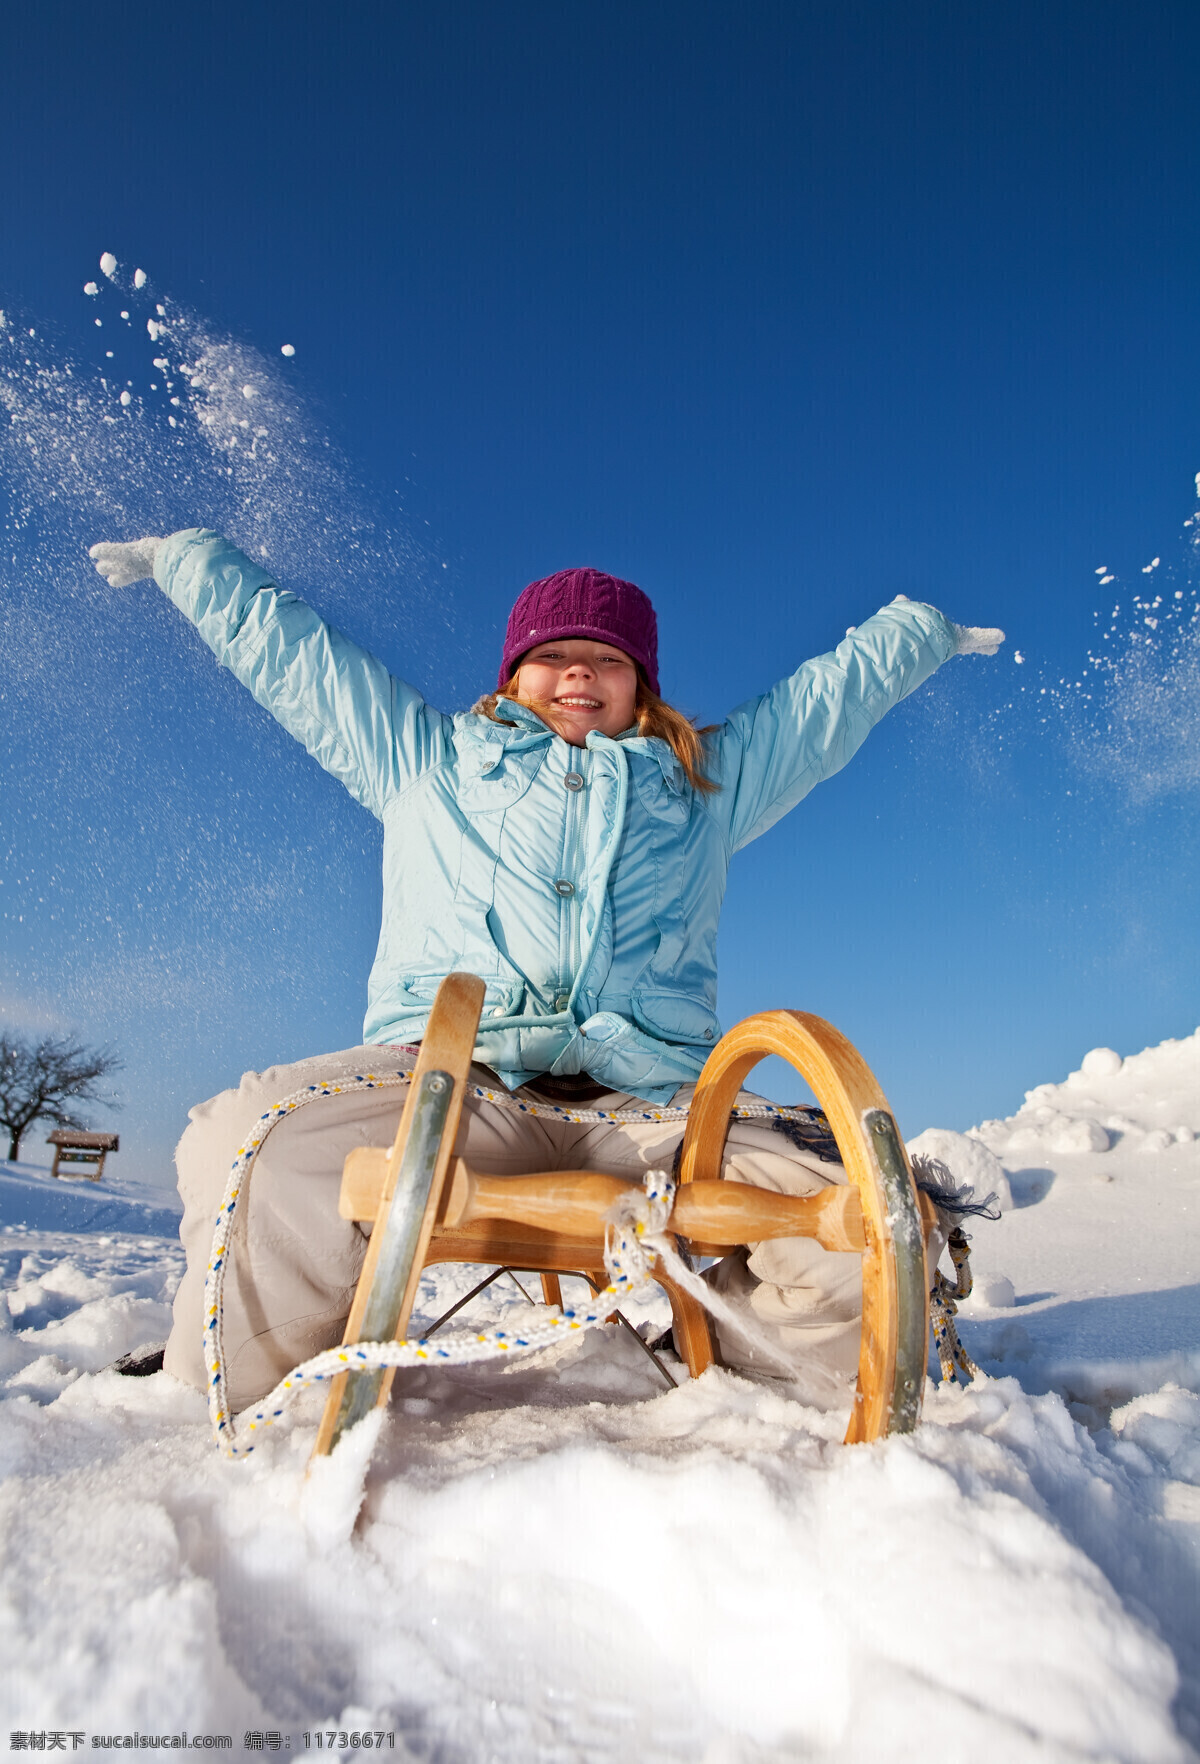 滑雪儿童摄影 儿童 女孩 雪橇 雪地 雪山 滑雪 体育 运动 人物 体育运动 生活百科 蓝色